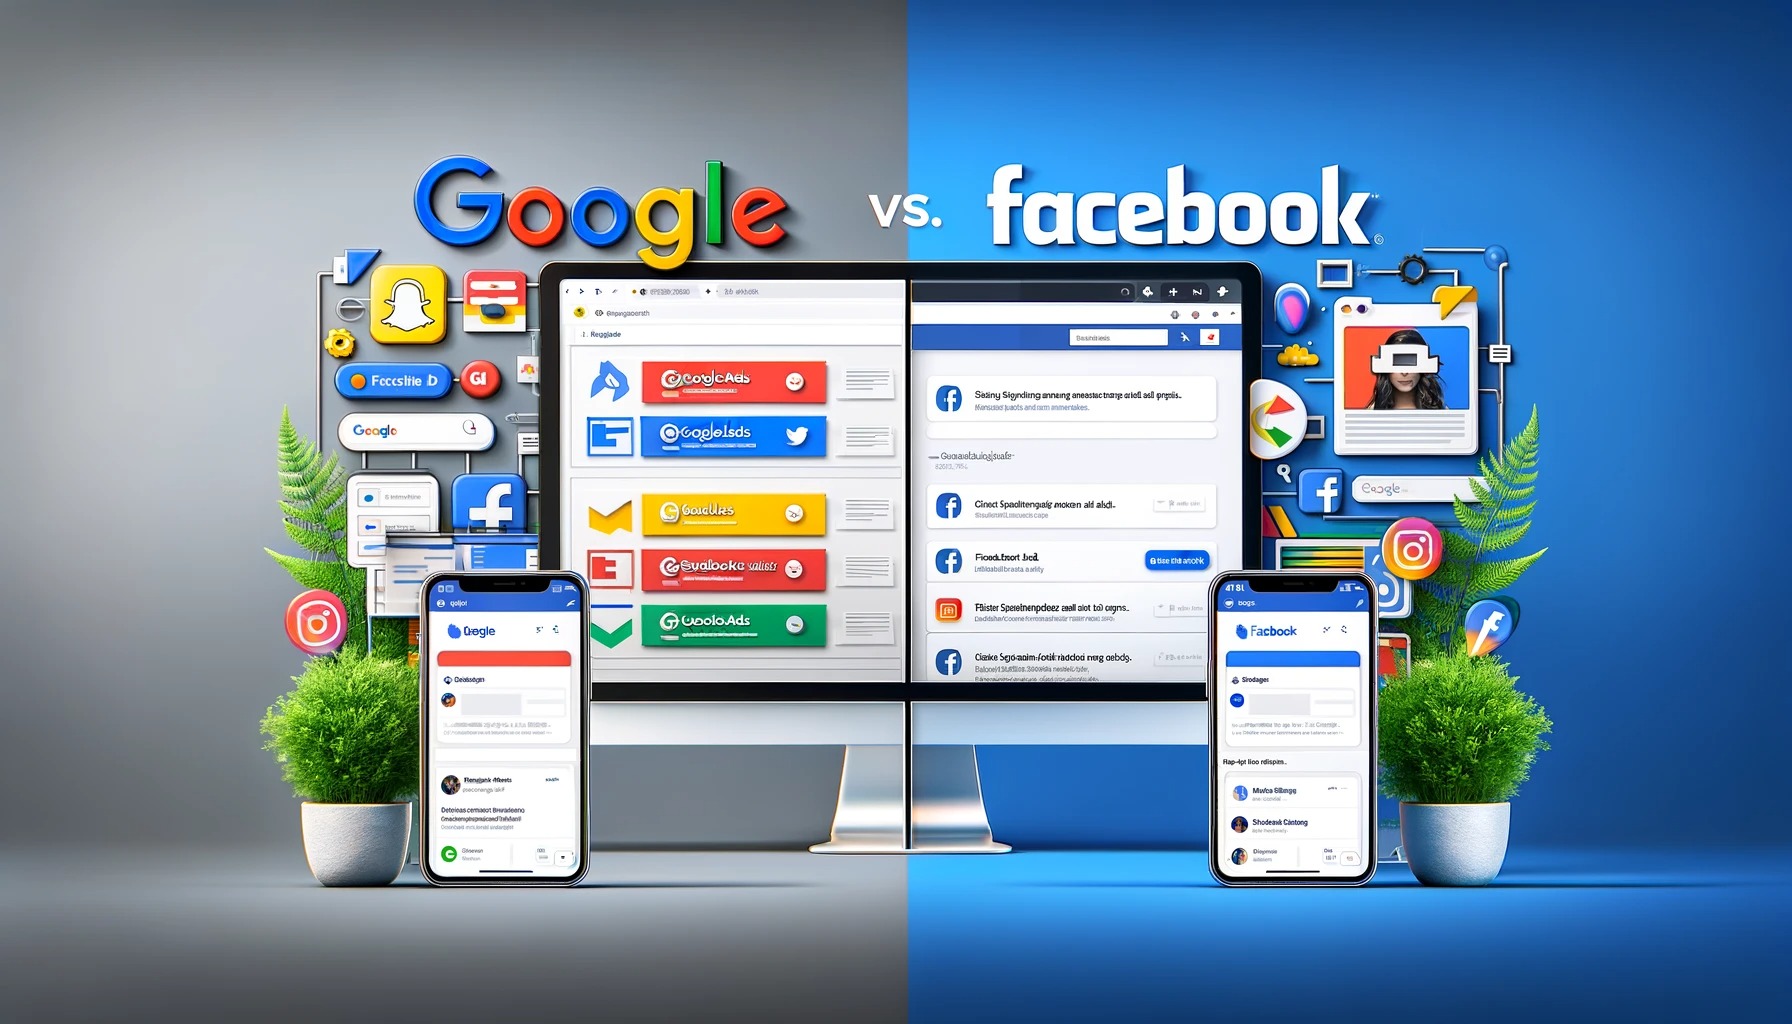 Google Ads vs Facebook Ads